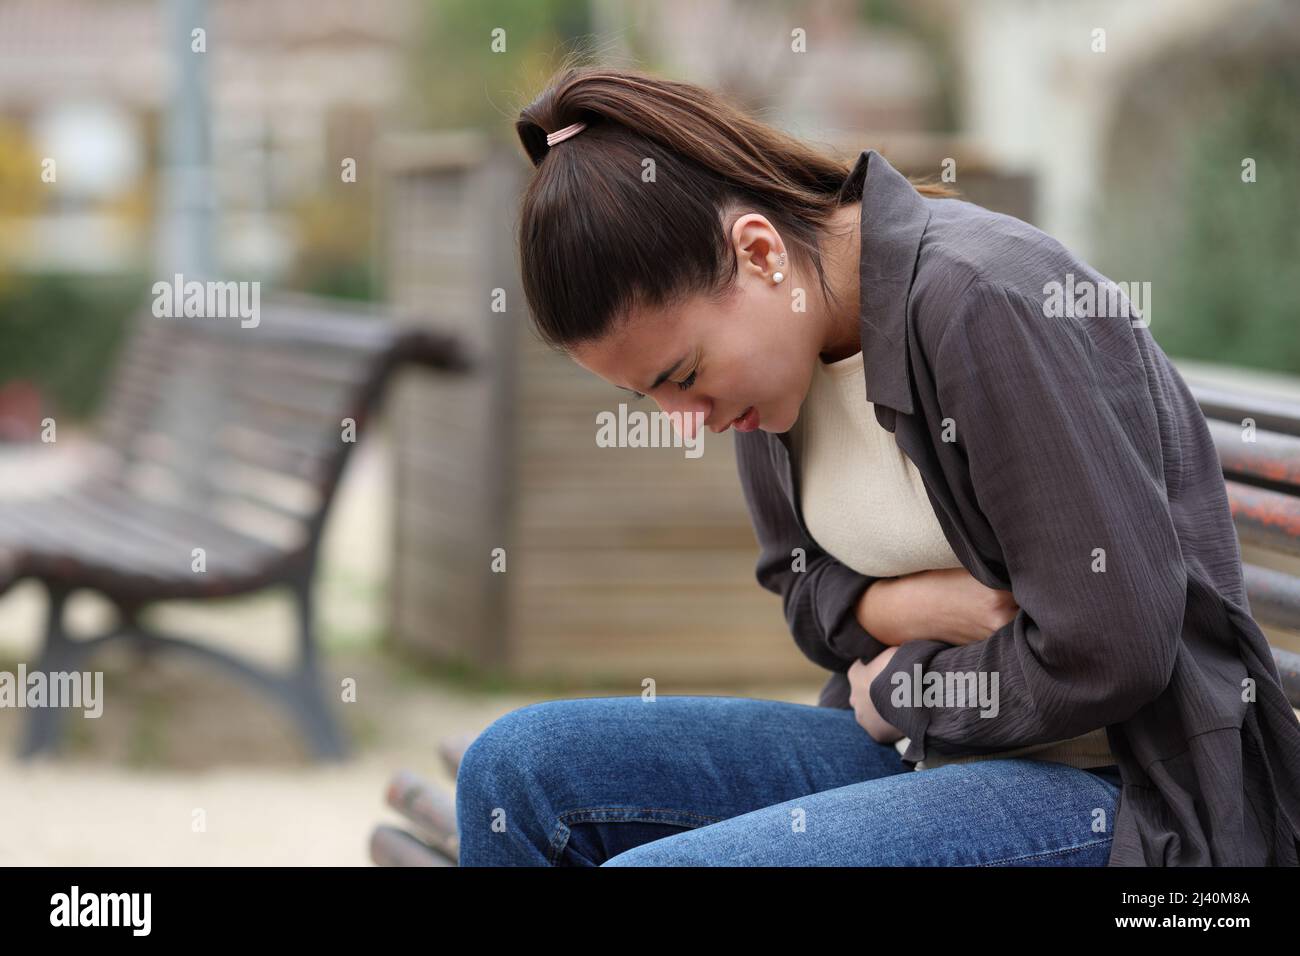 Profil einer jungen Frau mit Bauchschmerzen, die auf einer Bank in einem Park sitzt Stockfoto